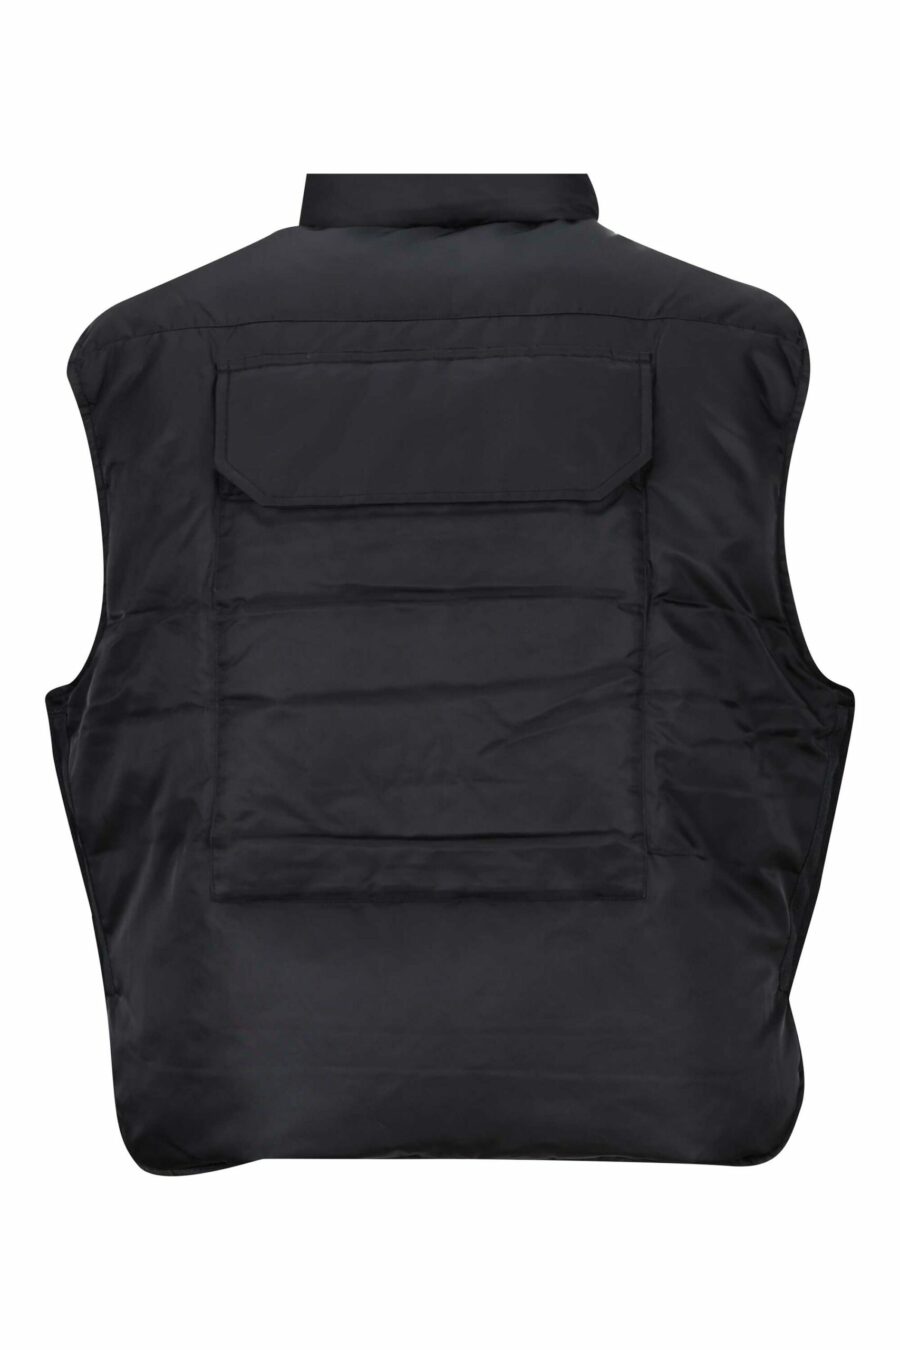 Gilet noir avec poches et mini logo "kenzo paris" - 3612230487857 2 échelles